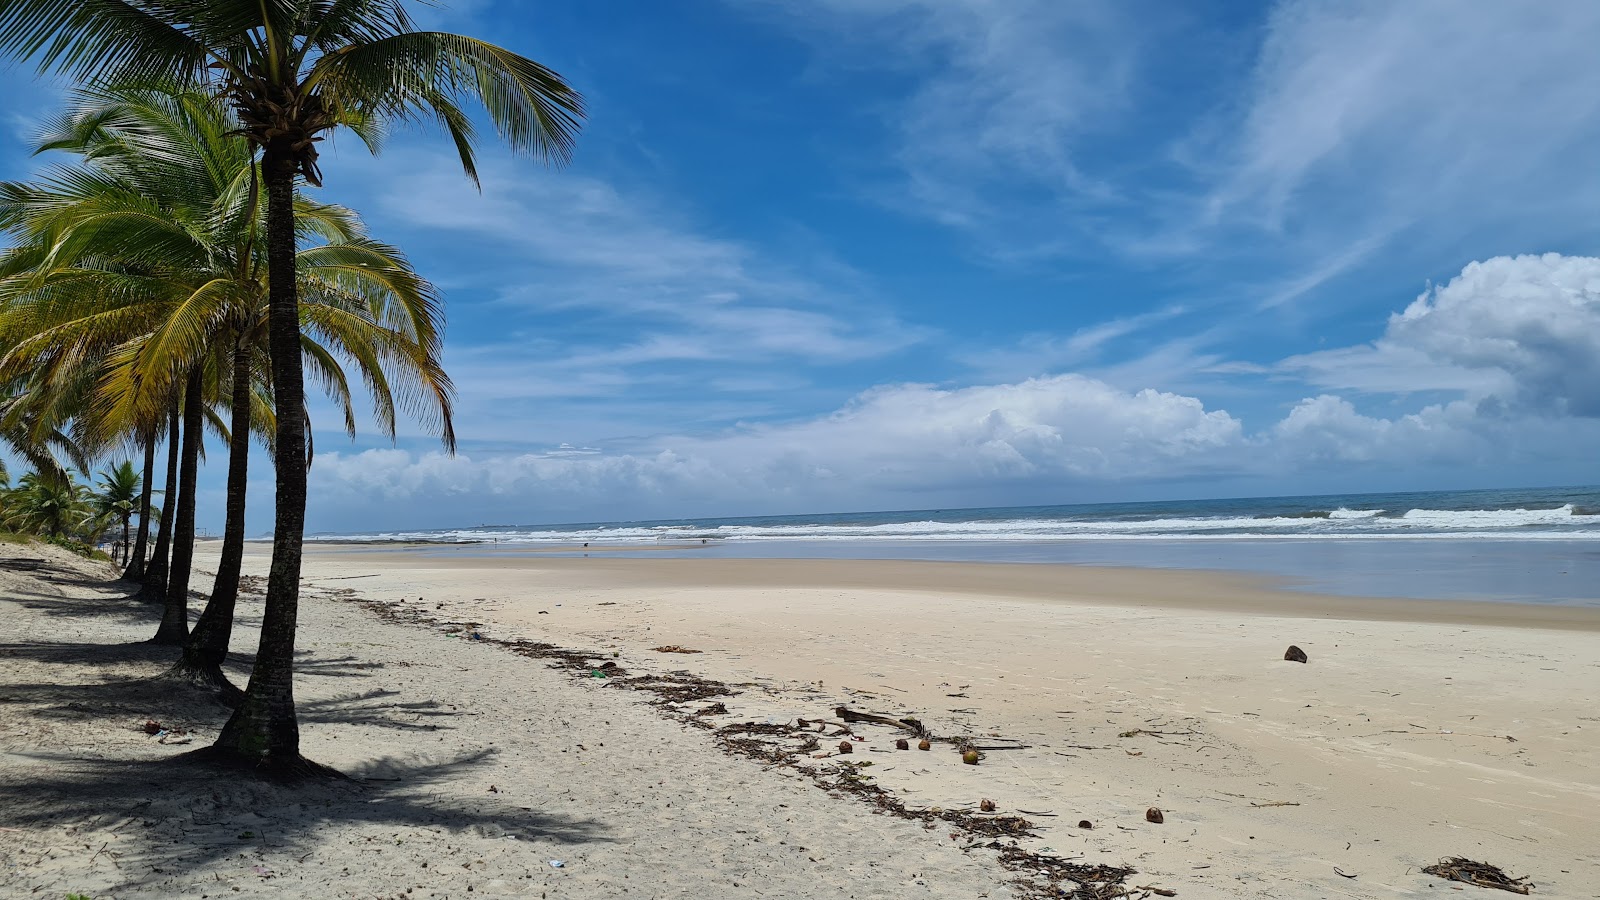 Fotografie cu Praia do Sul cu o suprafață de nisip fin strălucitor